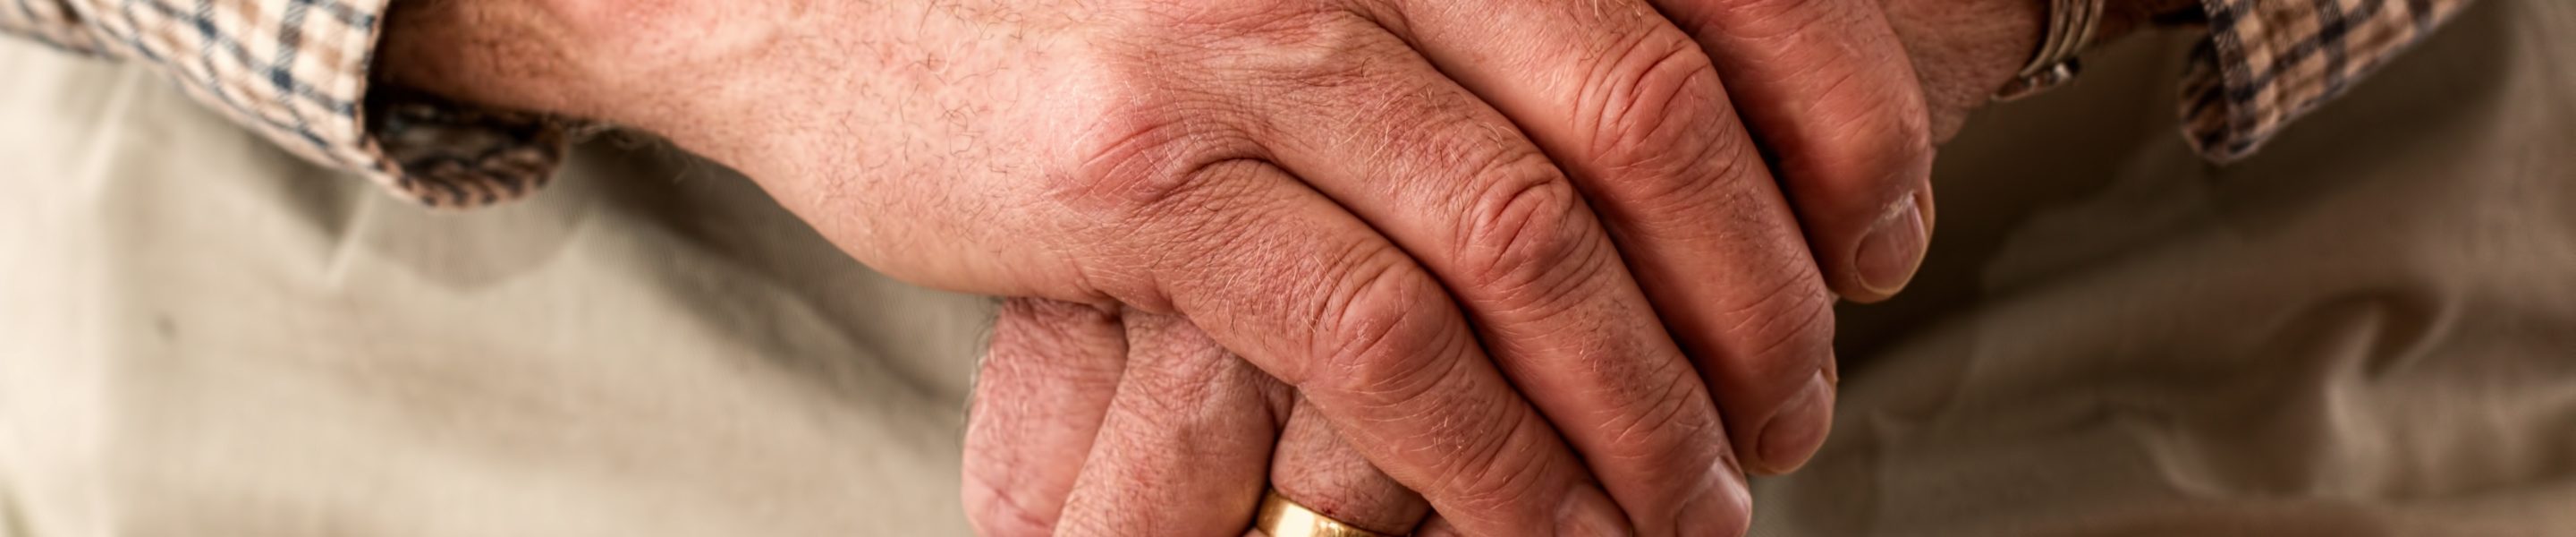 Nella foto si vedono le mani di una persona anziana